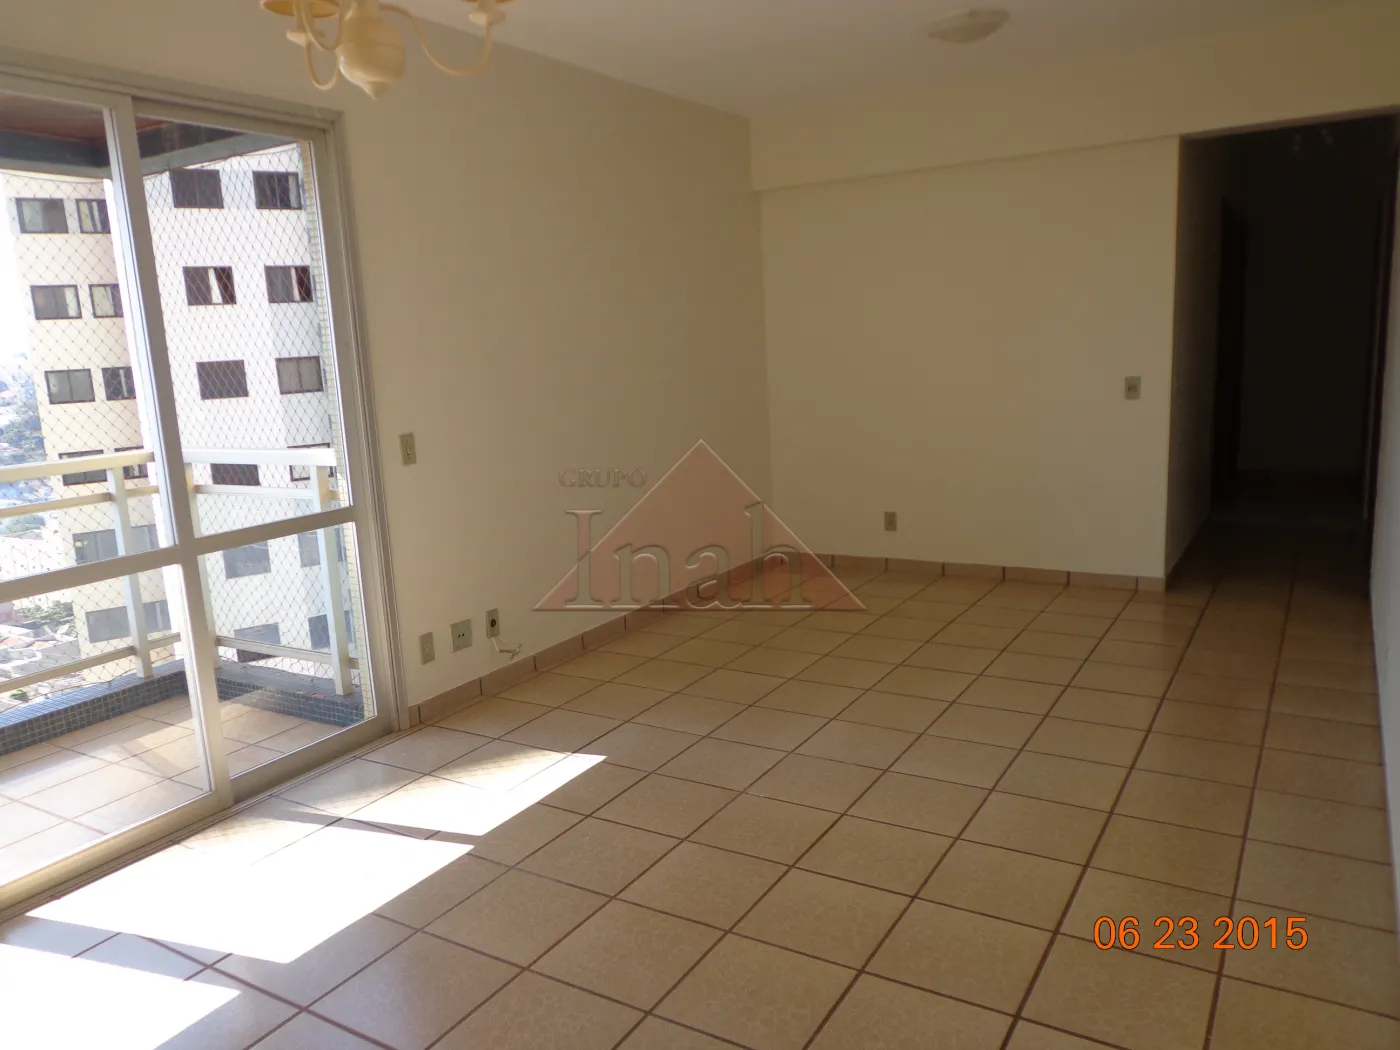 Alugar Apartamentos / Apartamento em Ribeirão Preto R$ 1.500,00 - Foto 4